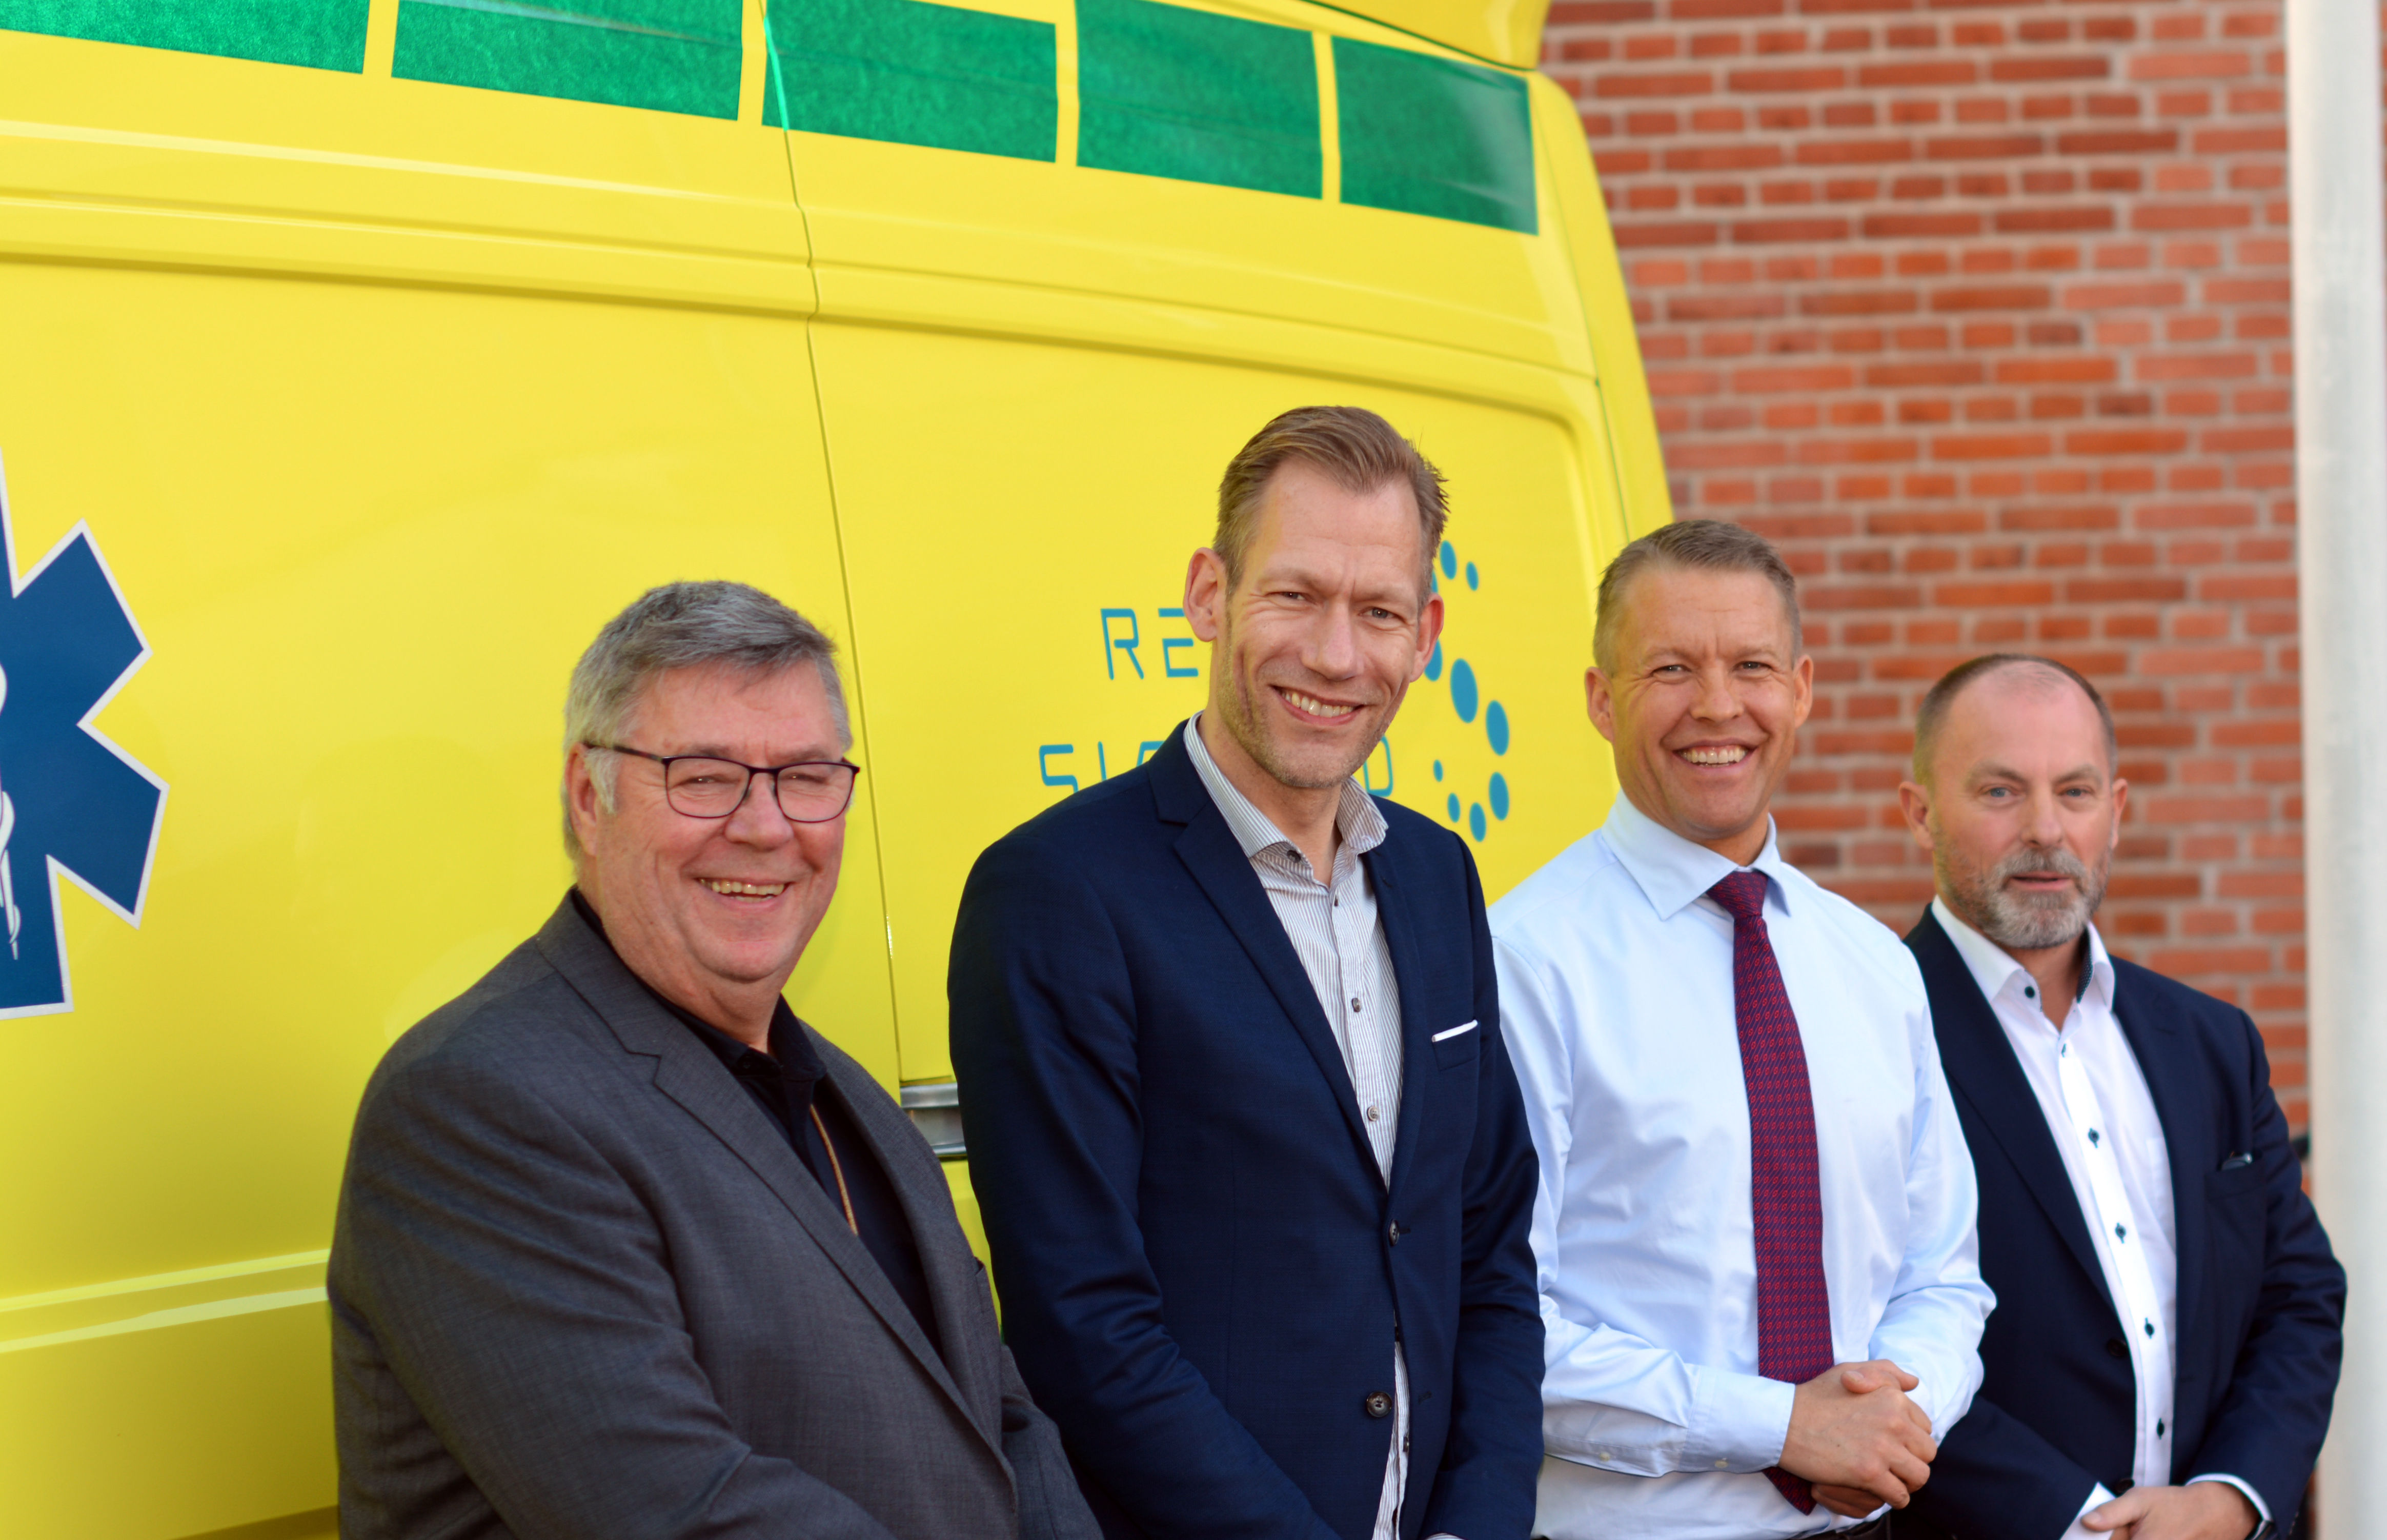 og Region kontrakt ambulancekørsel | Region Sjælland